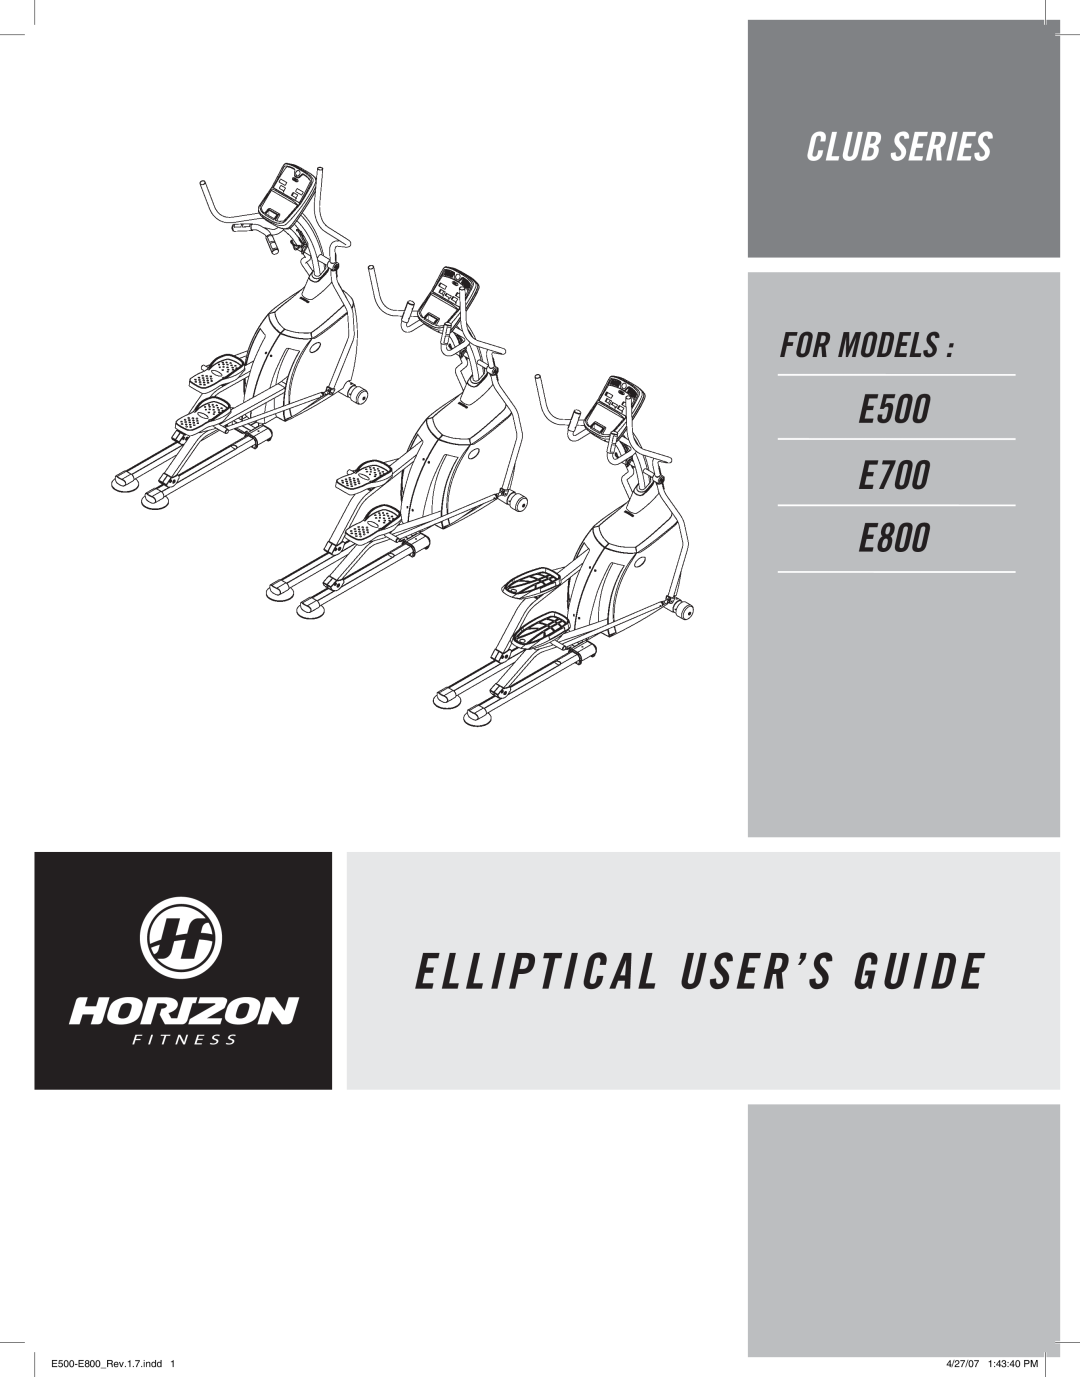 Horizon Fitness manual E L L I P T I C A L User’S Guide, Club Series, E500 E700 E800, For Models, E500-E800Rev.1.7.indd 